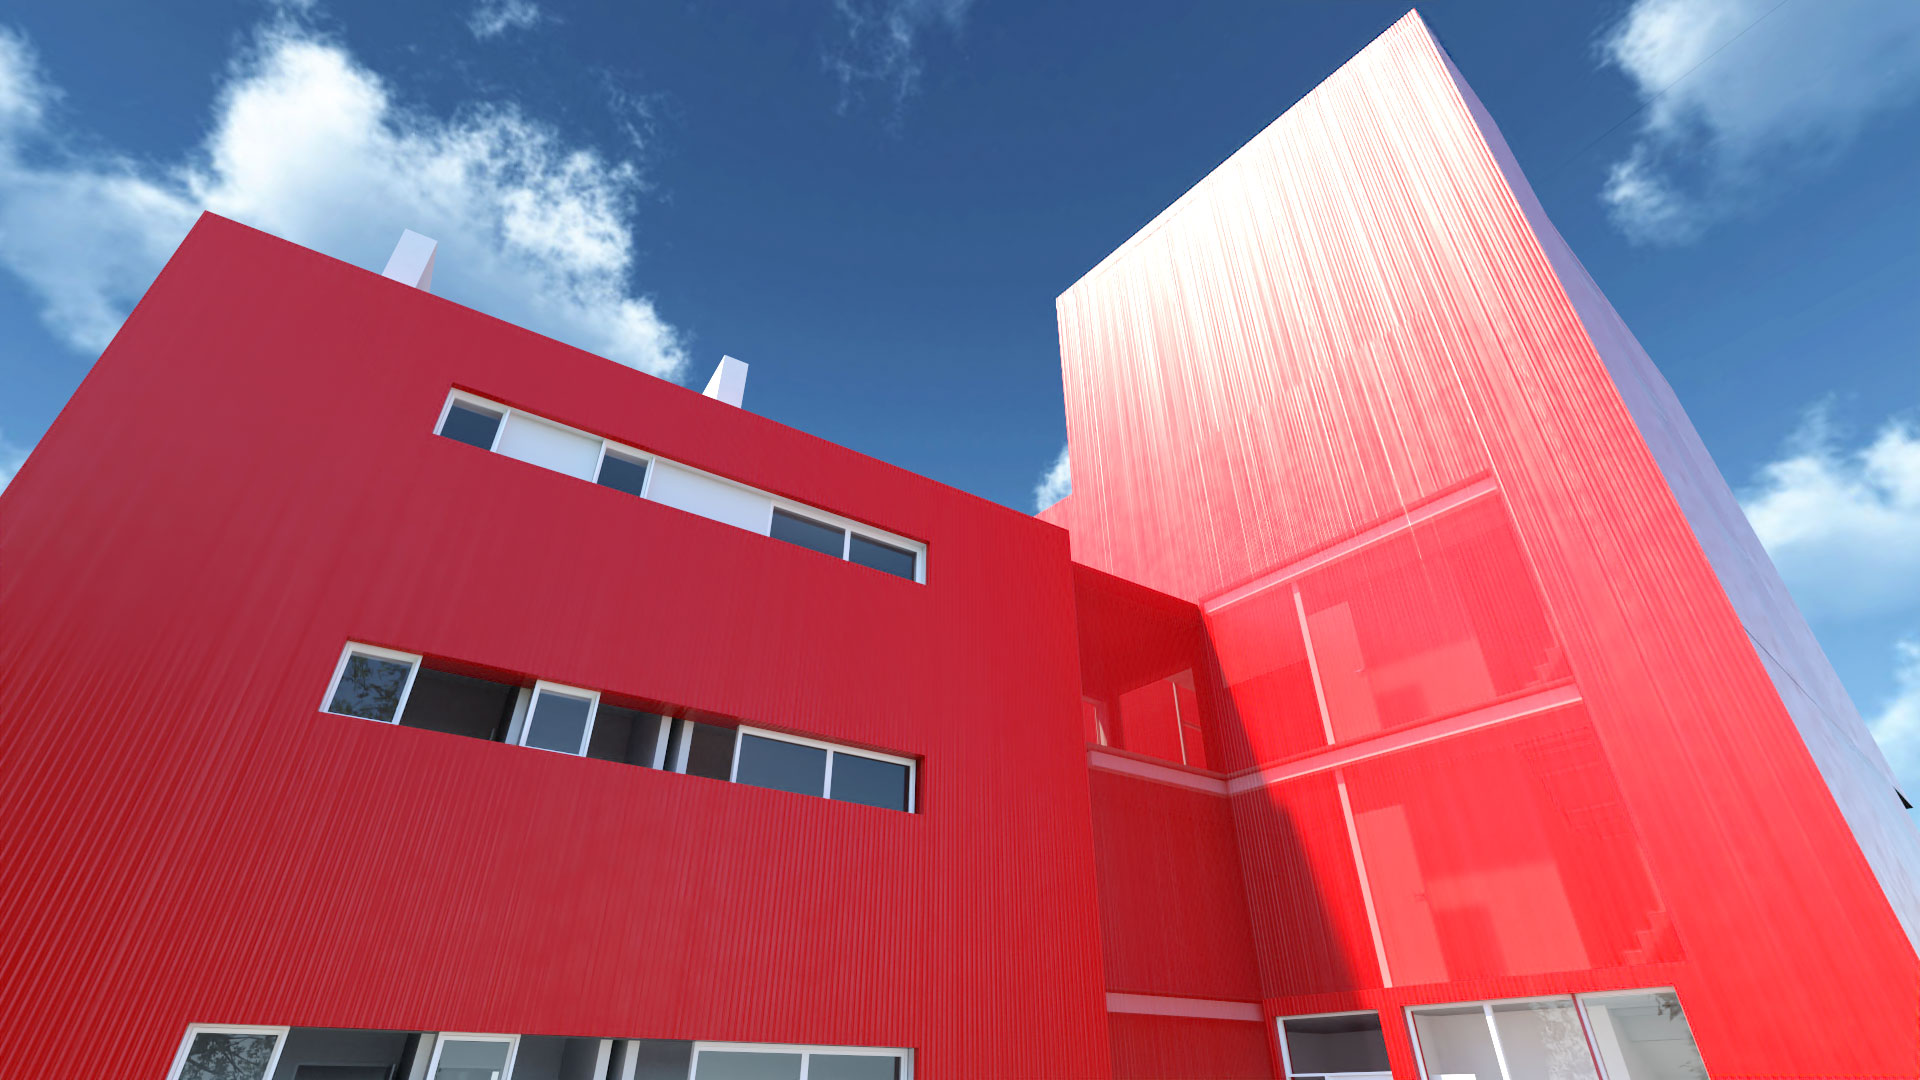 Red Building Residence slider08.jpg